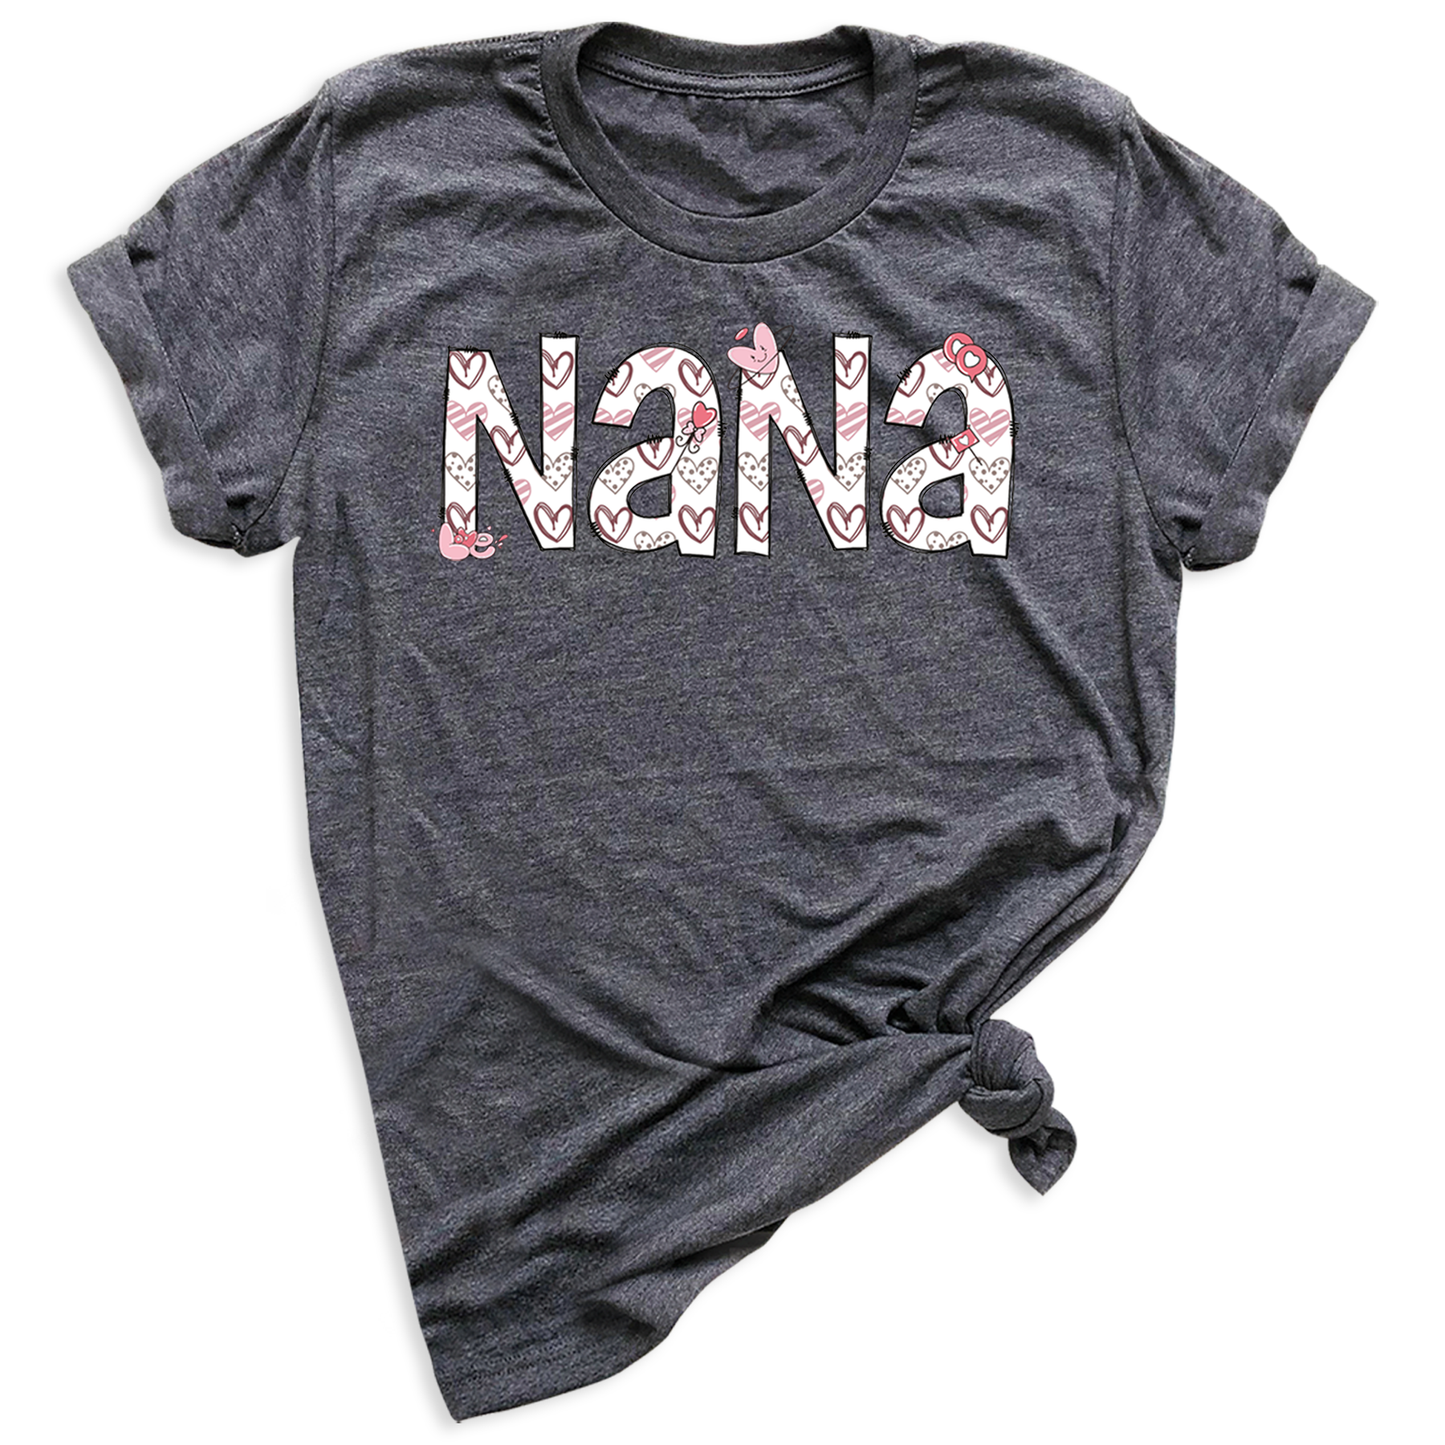 Nana Tee